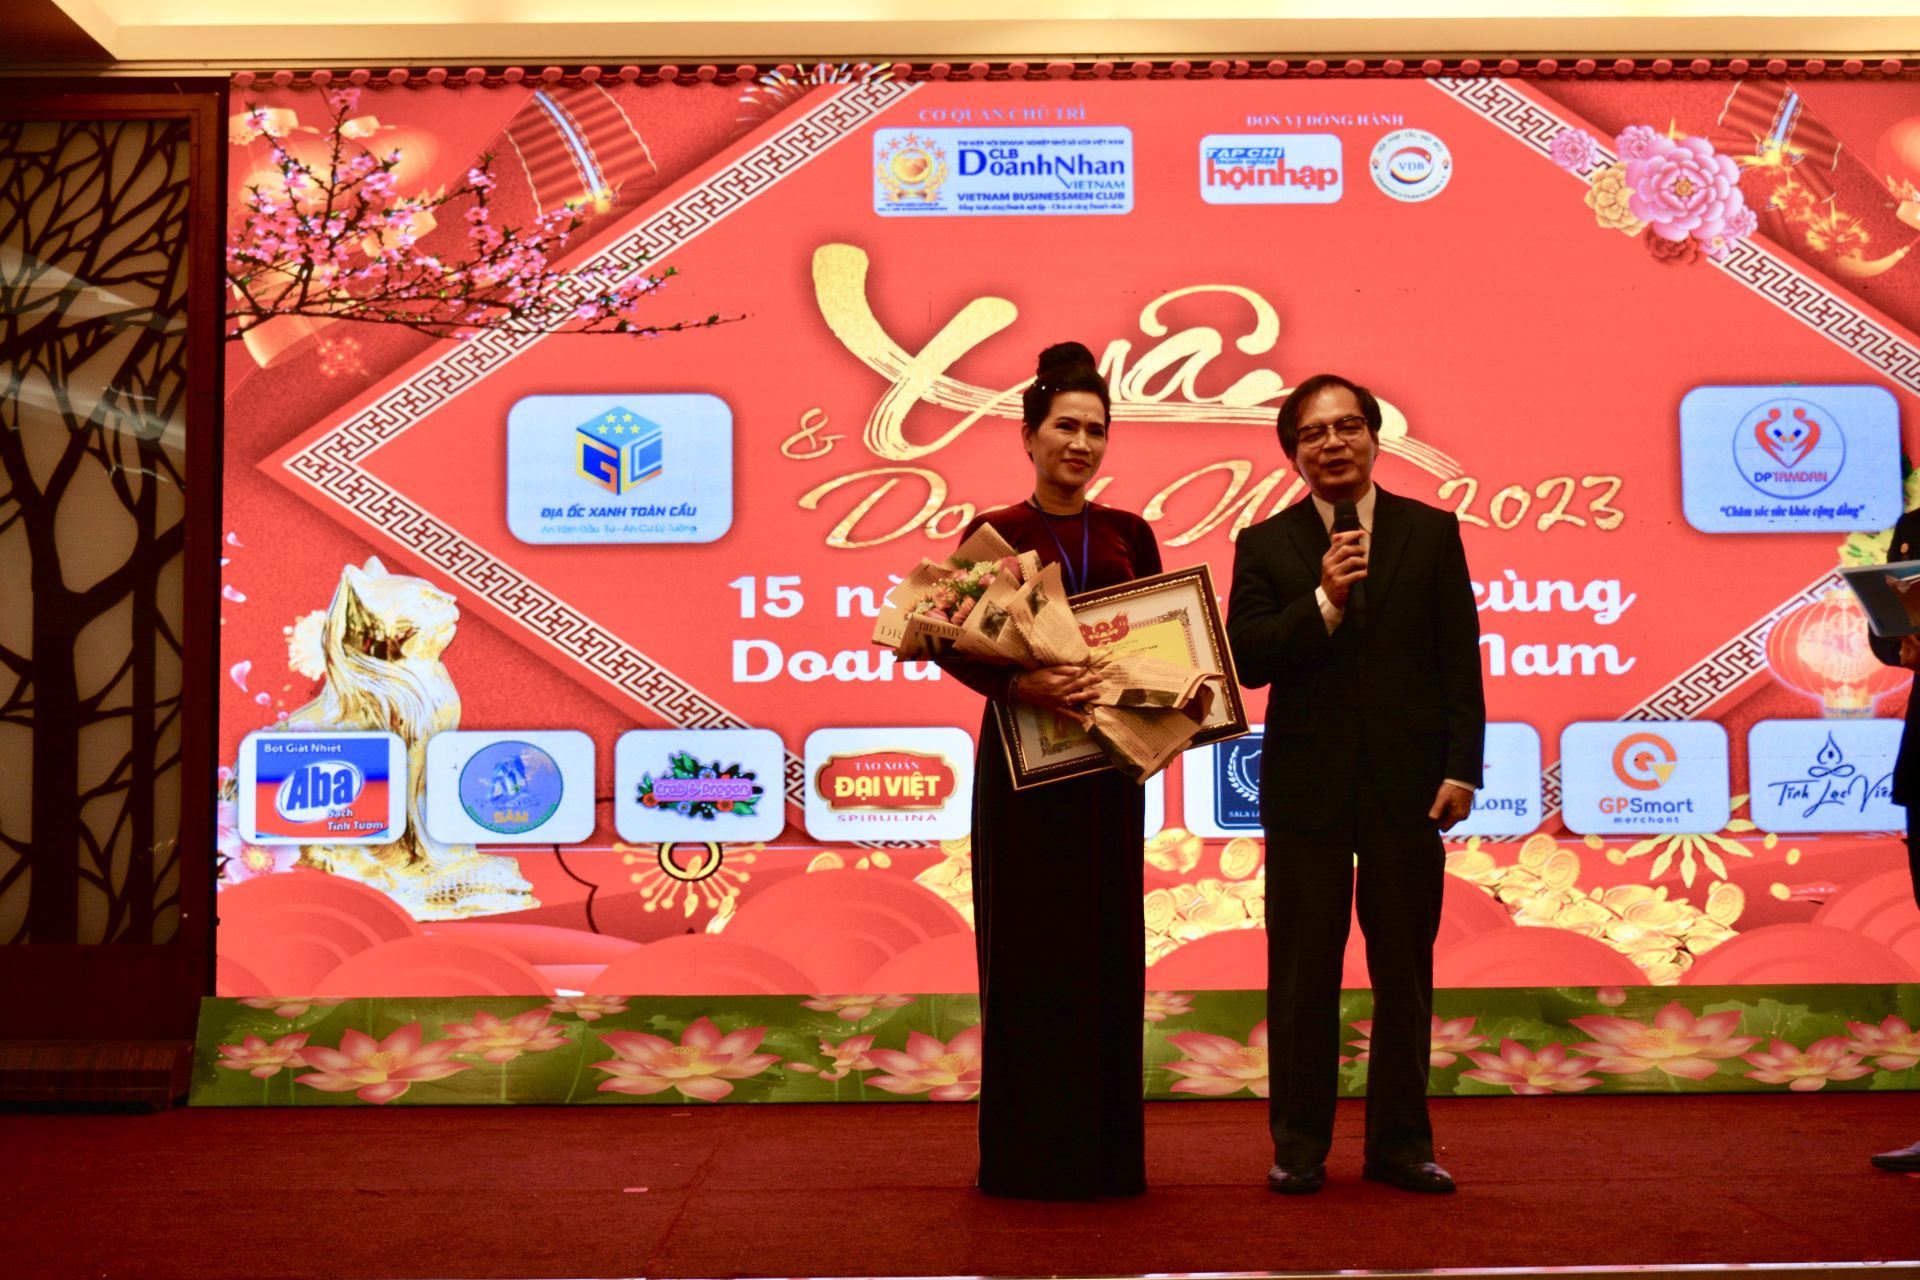 Bà Nguyễn Thị Thanh - Chủ Tịch CLB Doanh Nhân Việt Nam nhận hoa và bằng khen từ Hiệp Hội Doanh Nghiệp nhỏ và vừa